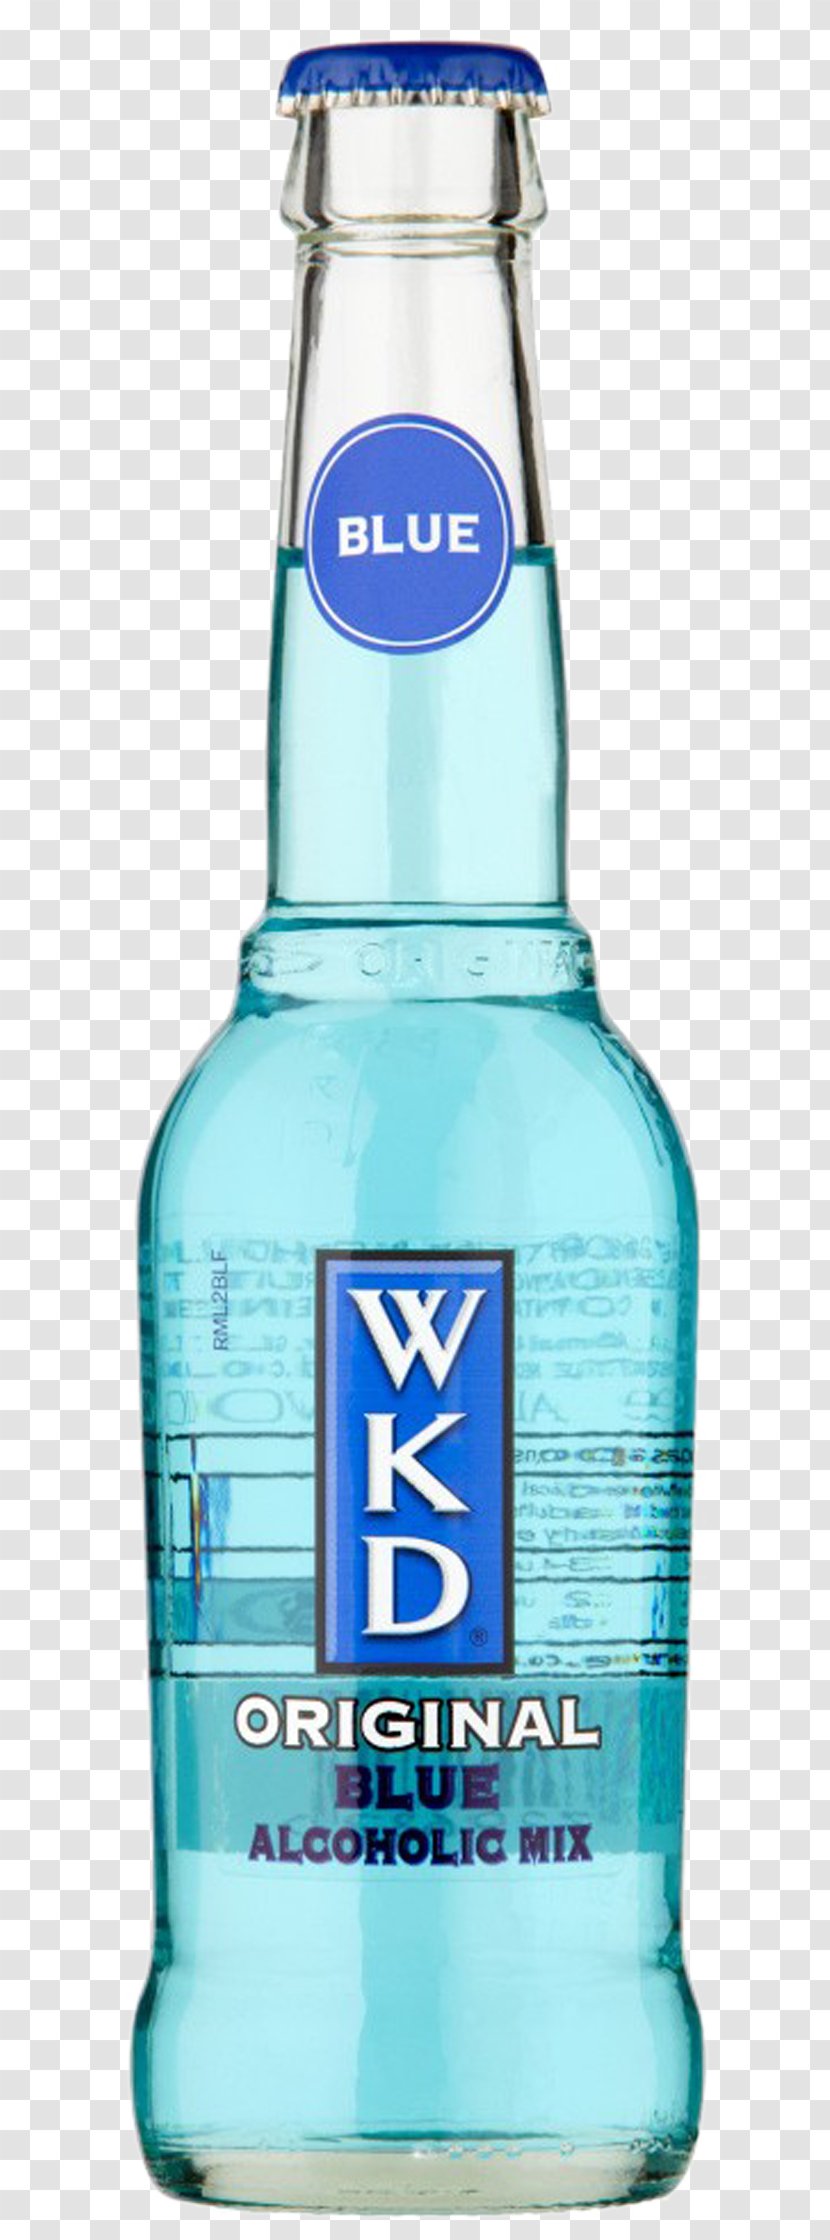 WKD Original Vodka Distilled Beverage Wine Beer Transparent PNG